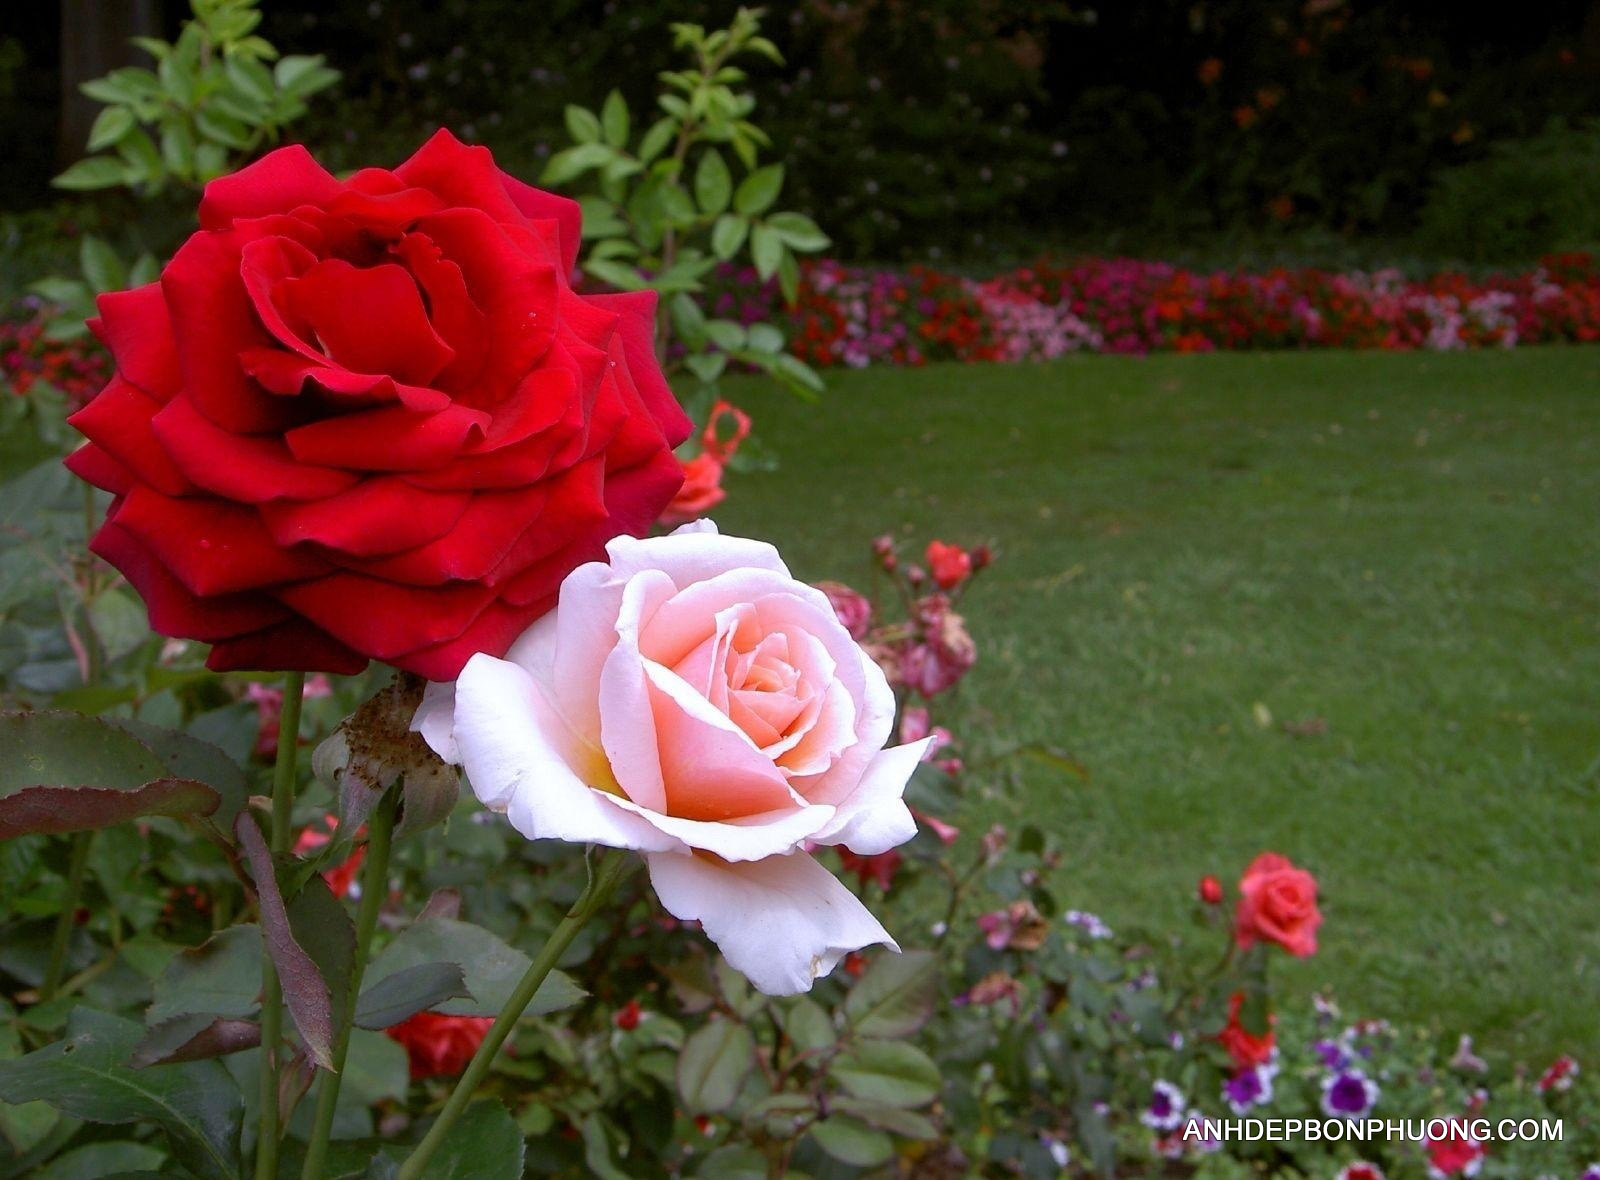 Tải hình ảnh hoa hồng đẹp tặng người yêu thương - Ảnh đẹp bốn phương